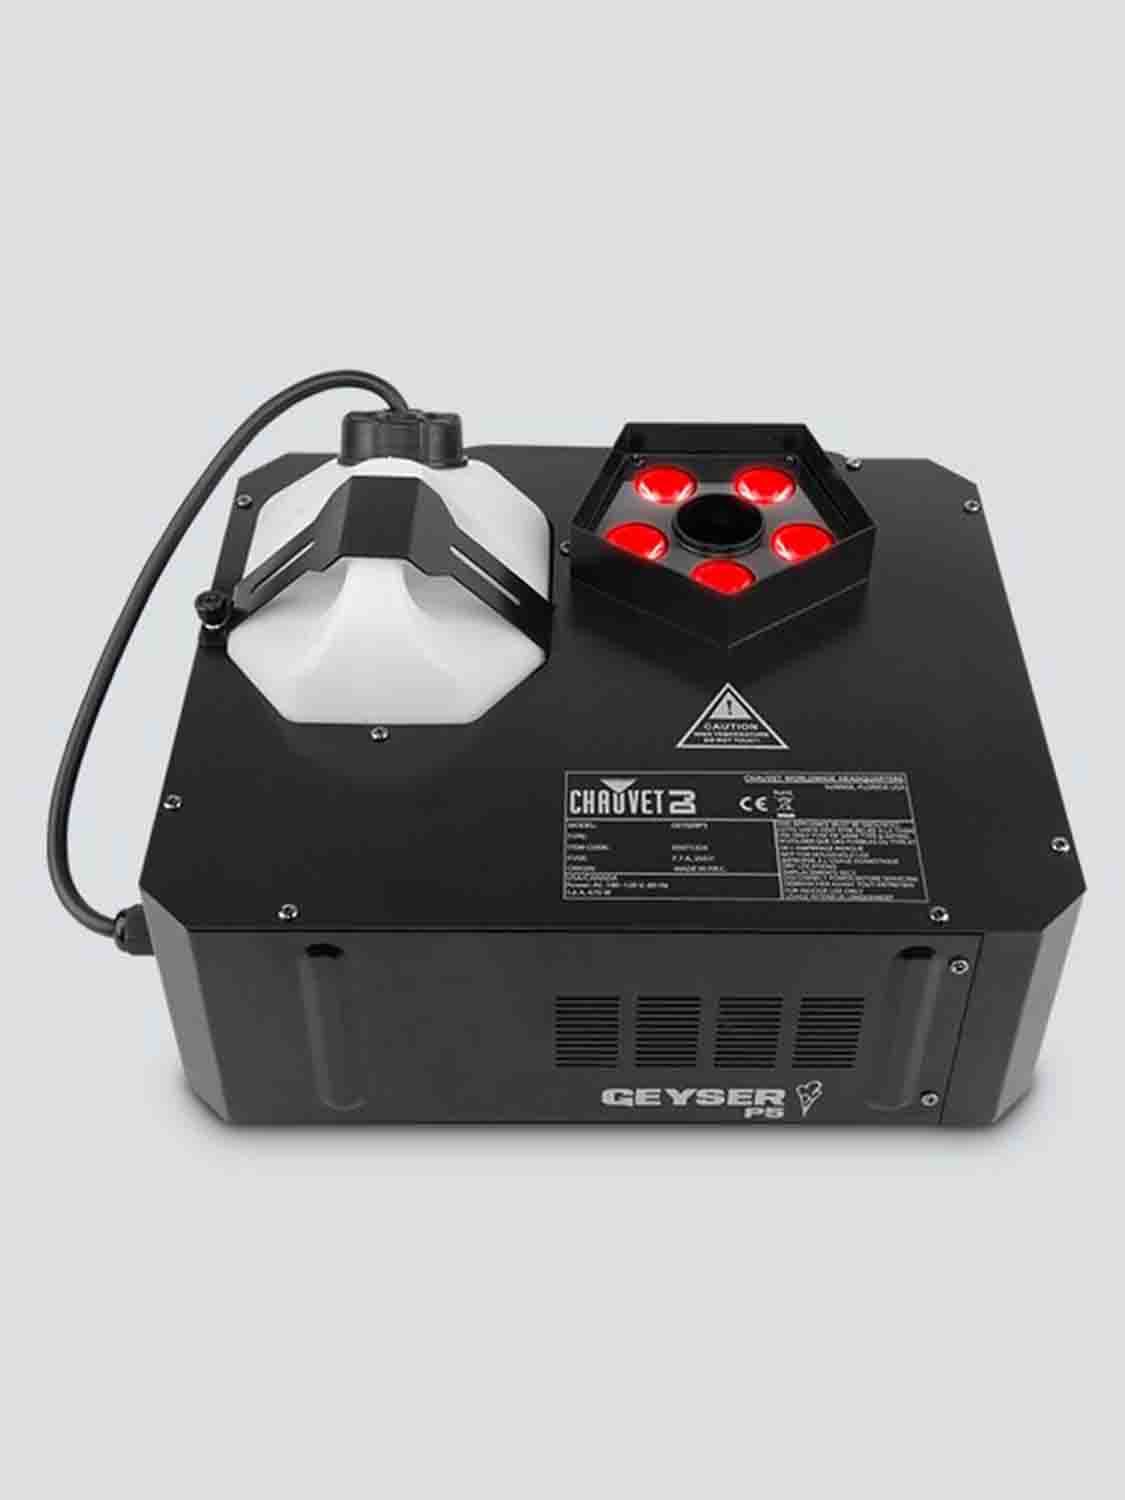 Chauvet DJ GEYSERP5 Geyser P5 RGBA+UV LED Pyrotechnic-Like Effect Fog Machine - Hollywood DJ